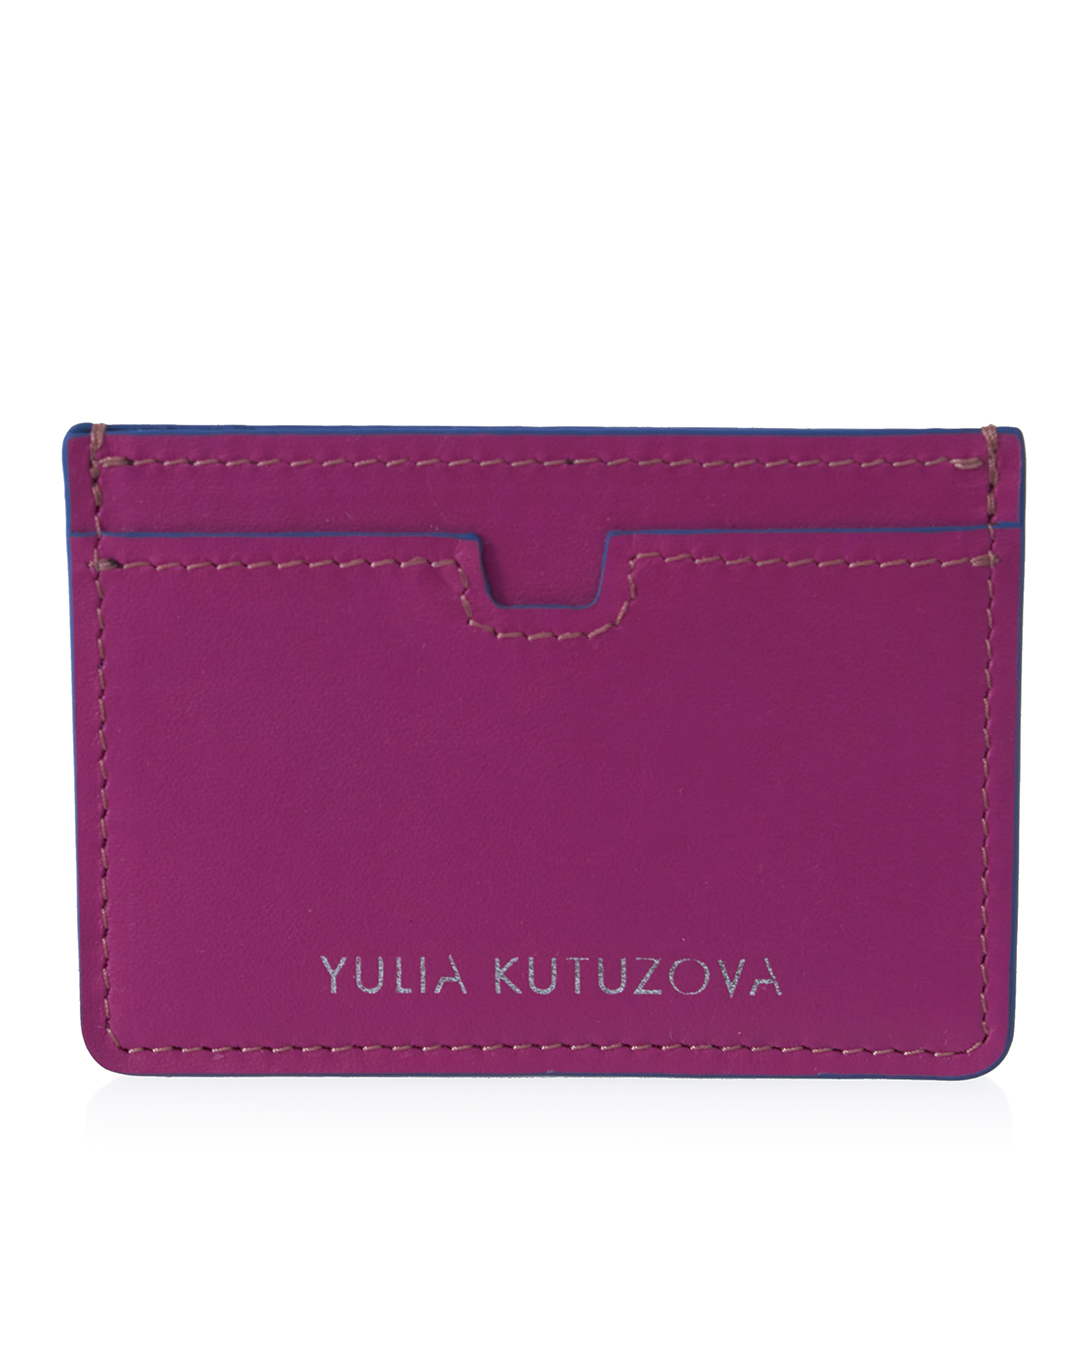 YULIA KUTUZOVA  артикул  марки YULIA KUTUZOVA купить за 4600 руб.